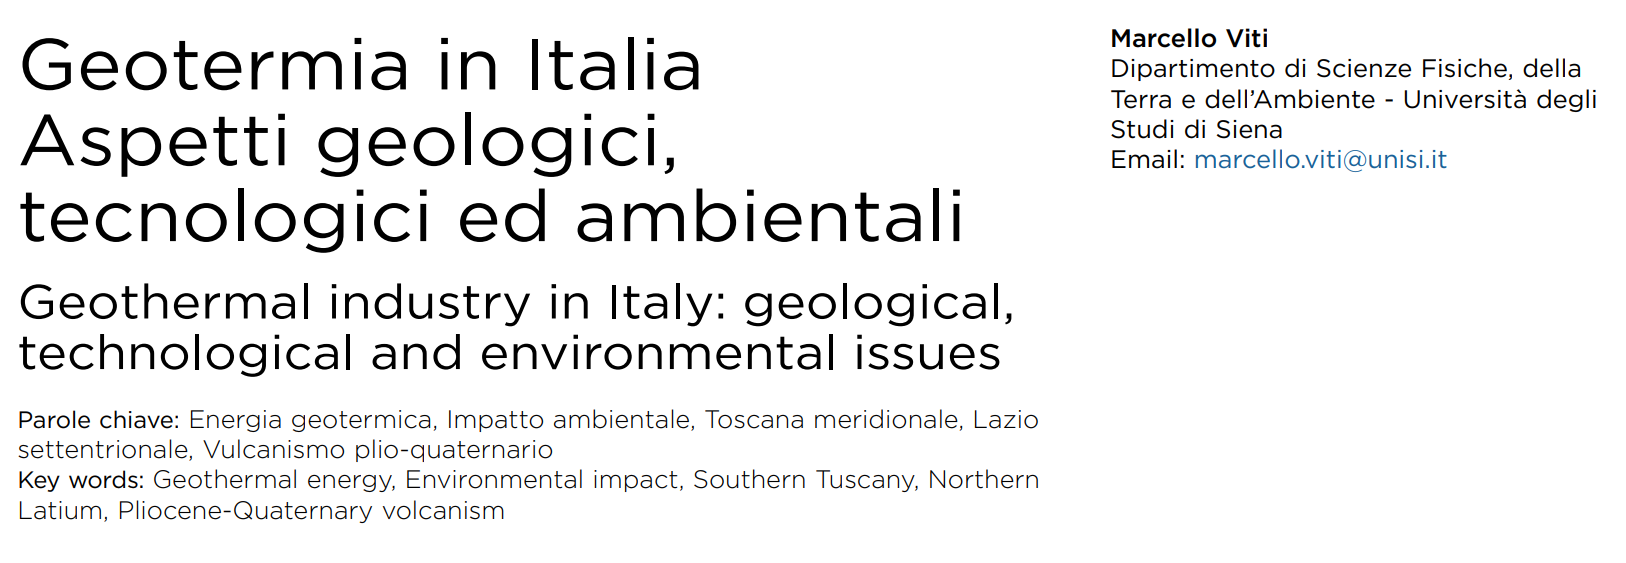 Geotermia in Italia. Aspetti geologici, tecnologici ed ambientali, di M. Viti - Università degli Studi di Siena